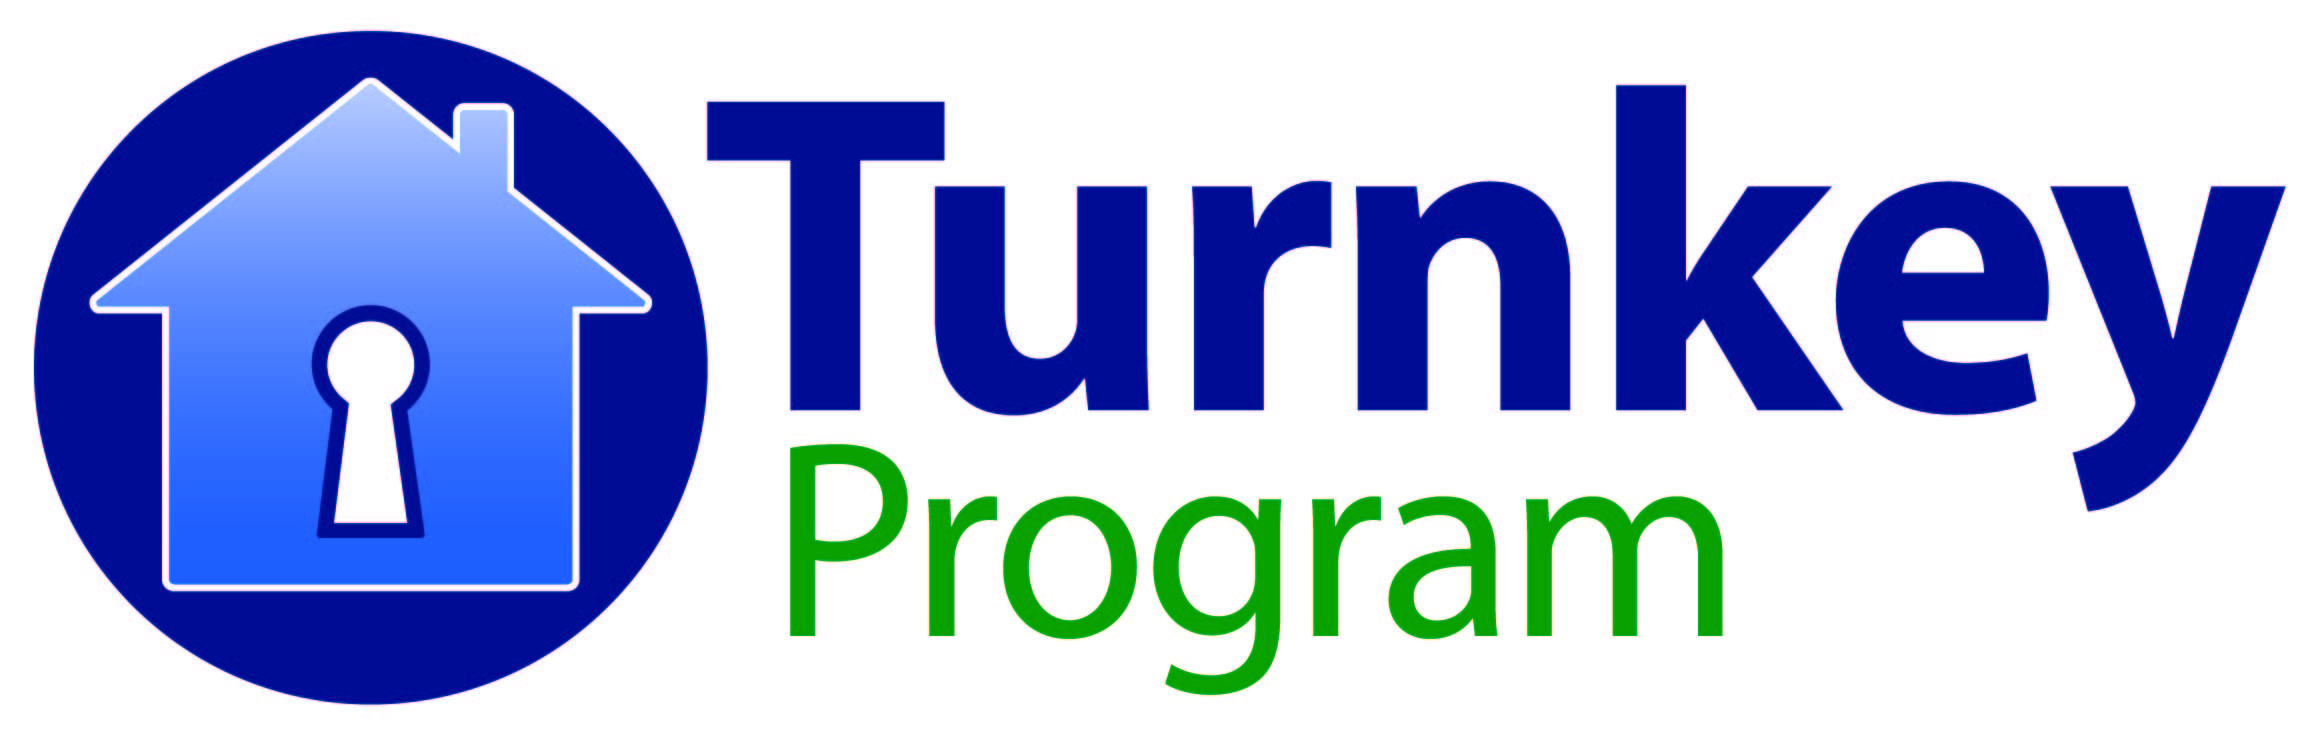 Simply Better Turnkey Program logo